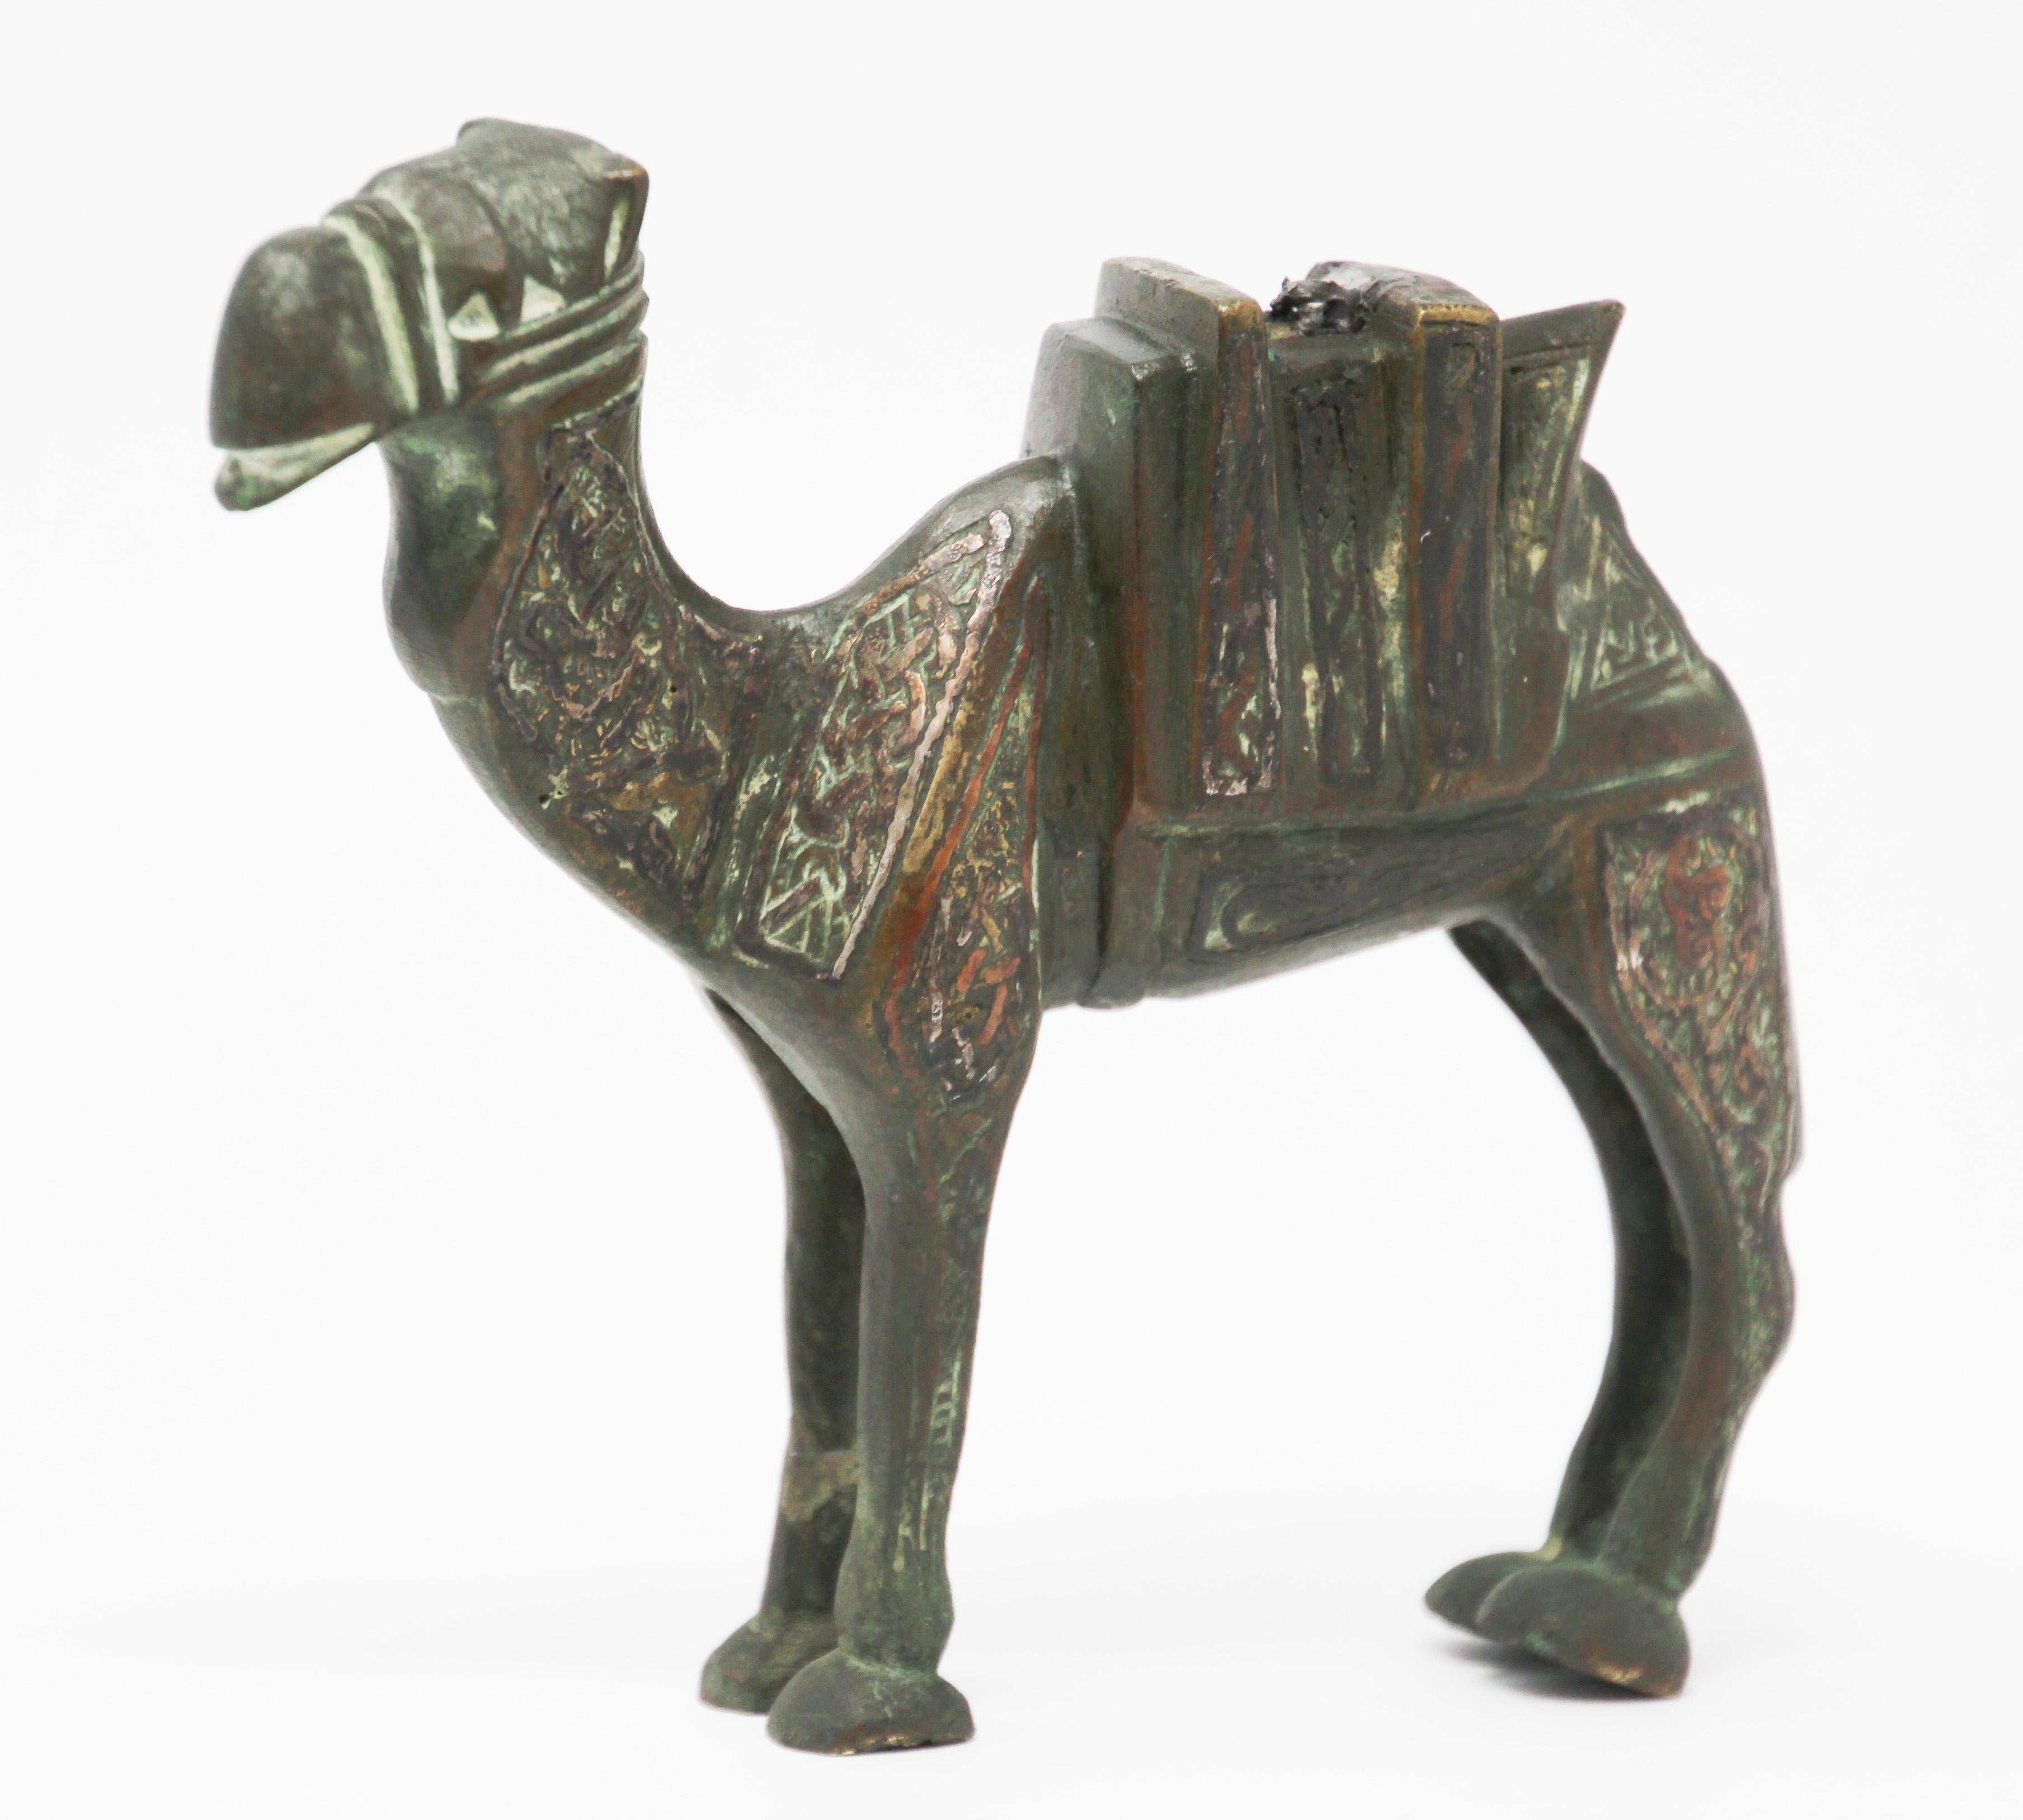 Il s'agit d'une sculpture ancienne d'un chameau en laiton coulé recouvert d'une décoration en cuivre, vers 1920.
Sculpture artisanale en laiton de style renaissance mamelouke, œuvre d'art en métal avec incrustation islamique.
Très décoratif